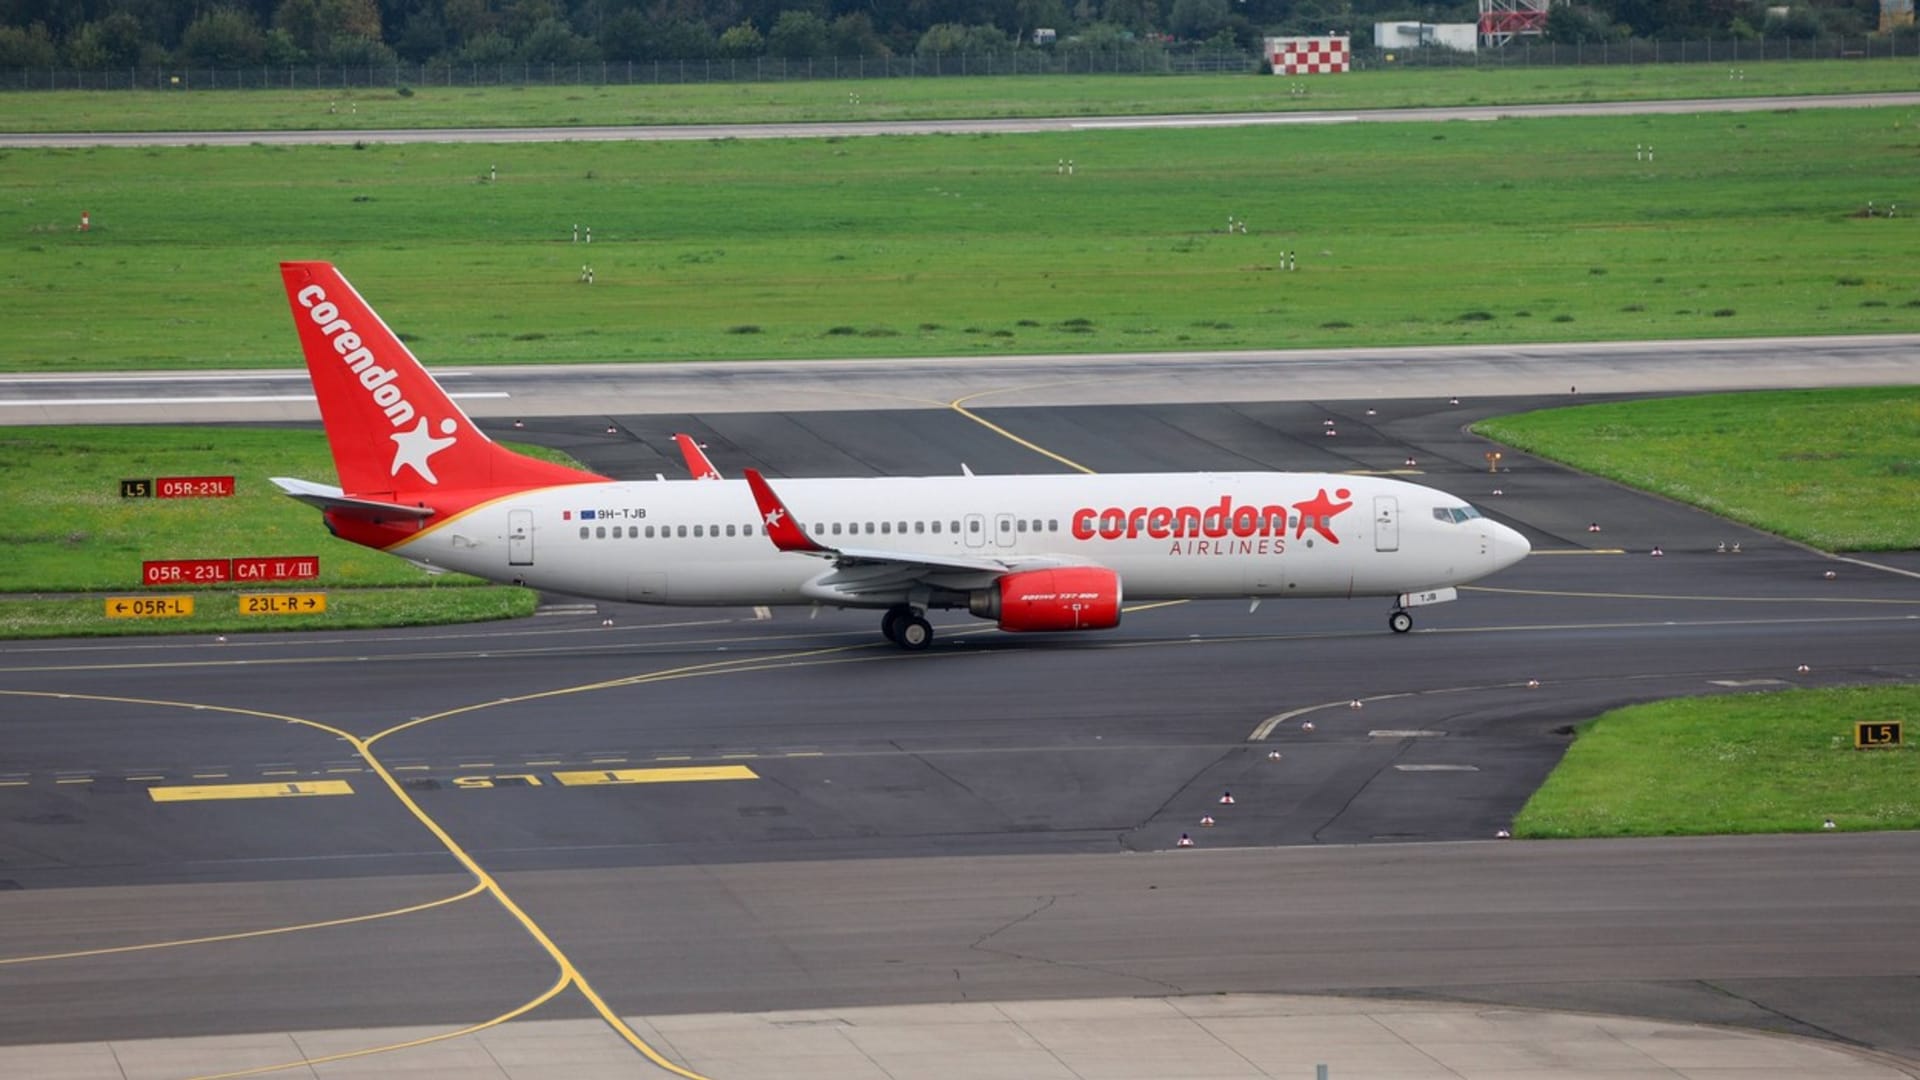 Letecká společnost Corendon na svých strojích vyčlení zónu, do které budou mít děti zakázaný vstup.